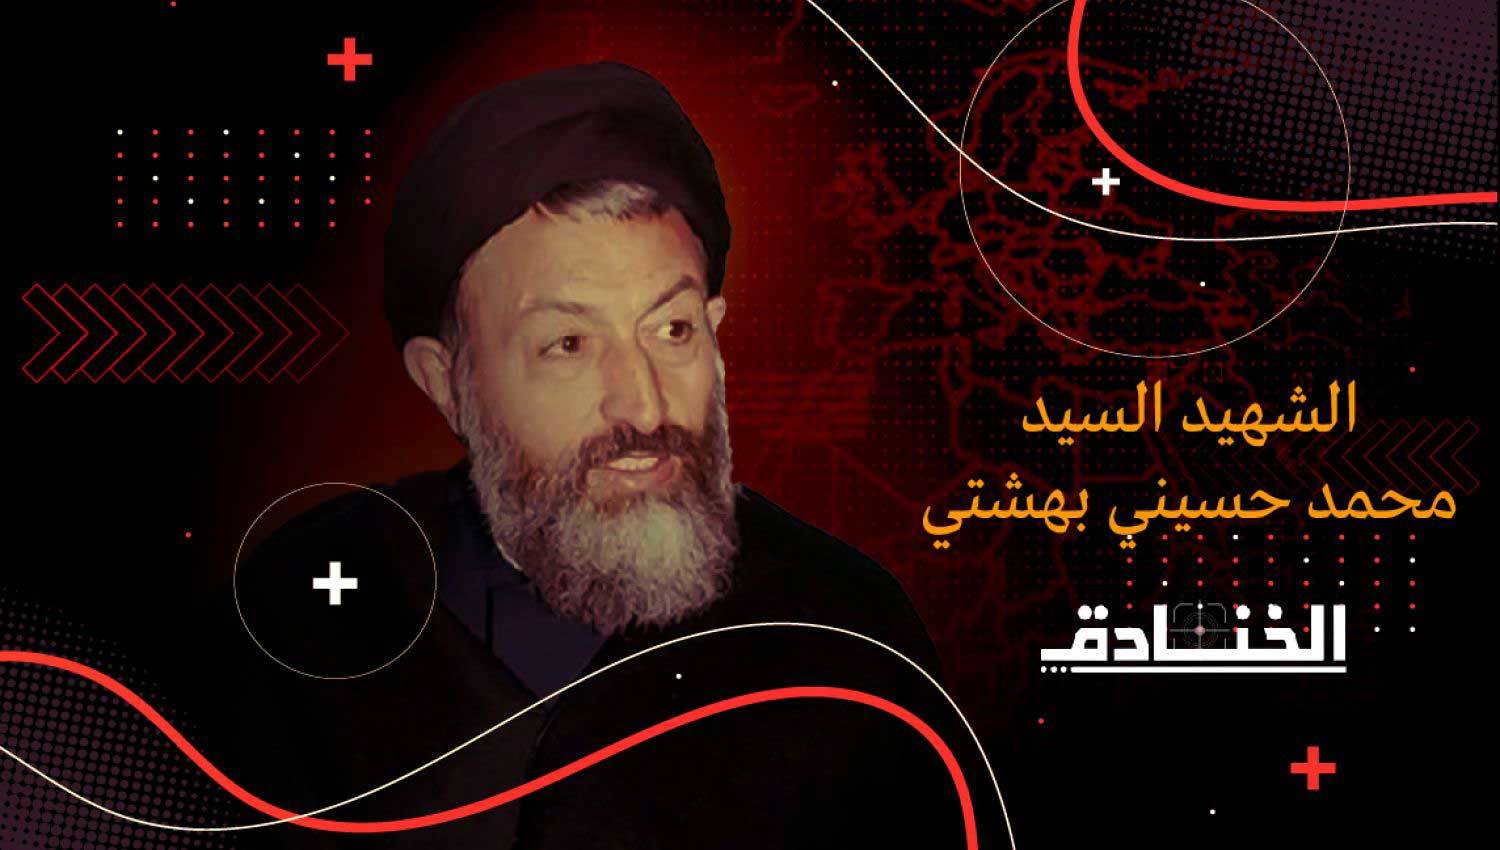 السيد بهشتي: أمّة الثورة الإسلامية في رجل